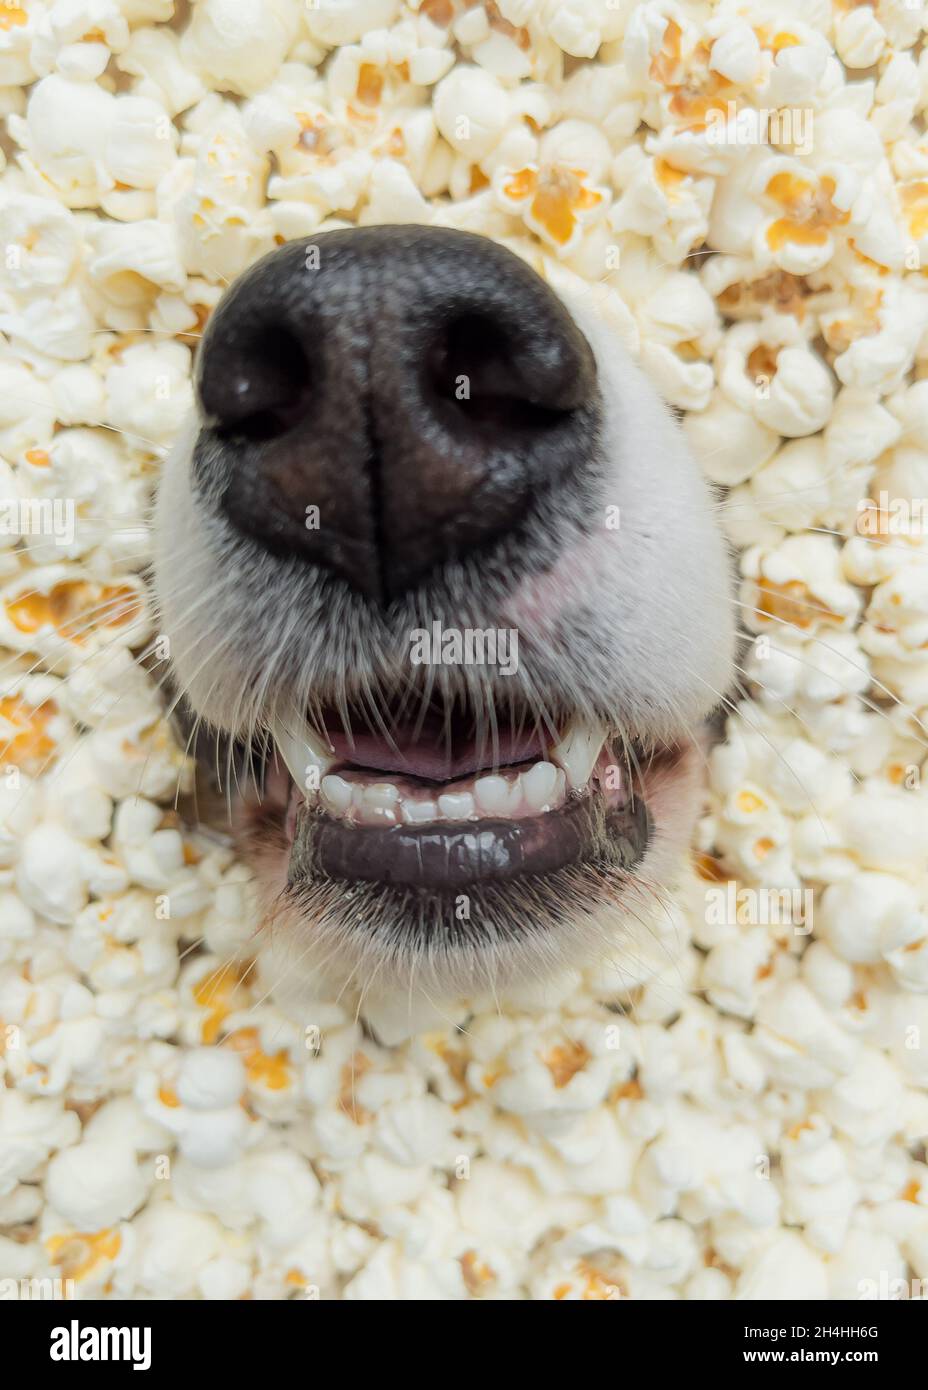 Hund in Popcorn. Nase des australischen Schäferhundes inmitten von - Nahaufnahme Stockfotografie - Alamy